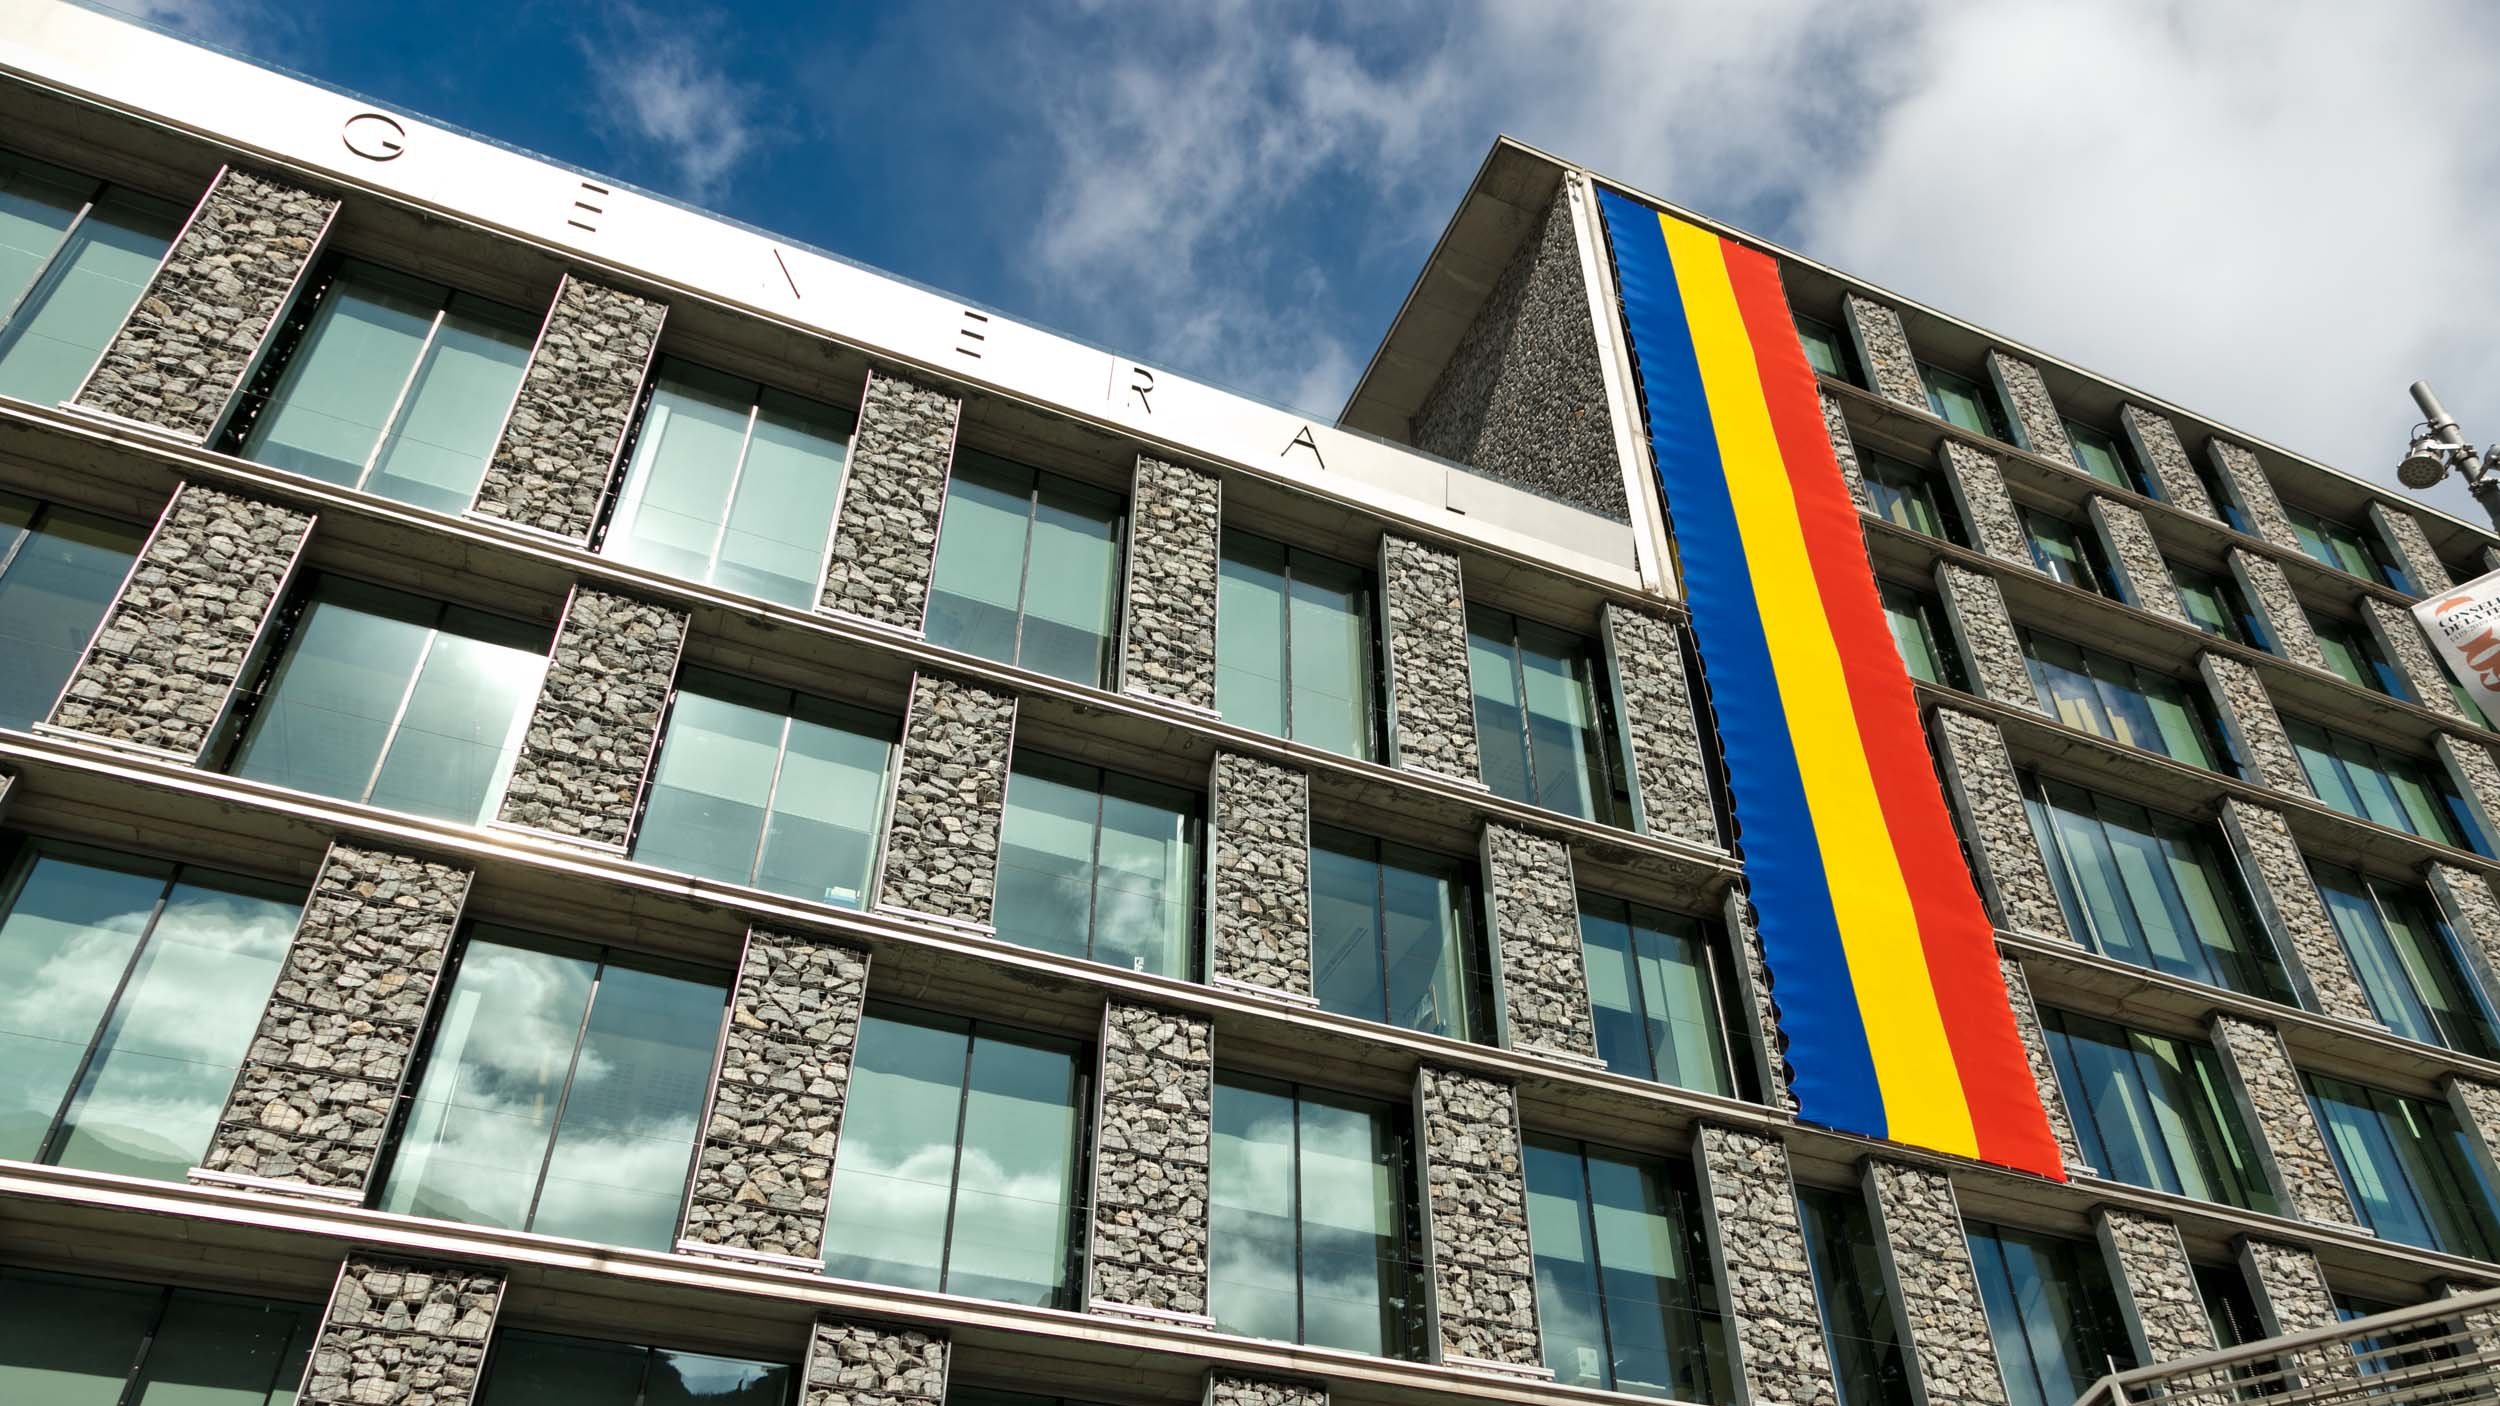 27è aniversari de la Constitució del Principat d’Andorra 2020 - 13 i 14 de Març del 2020